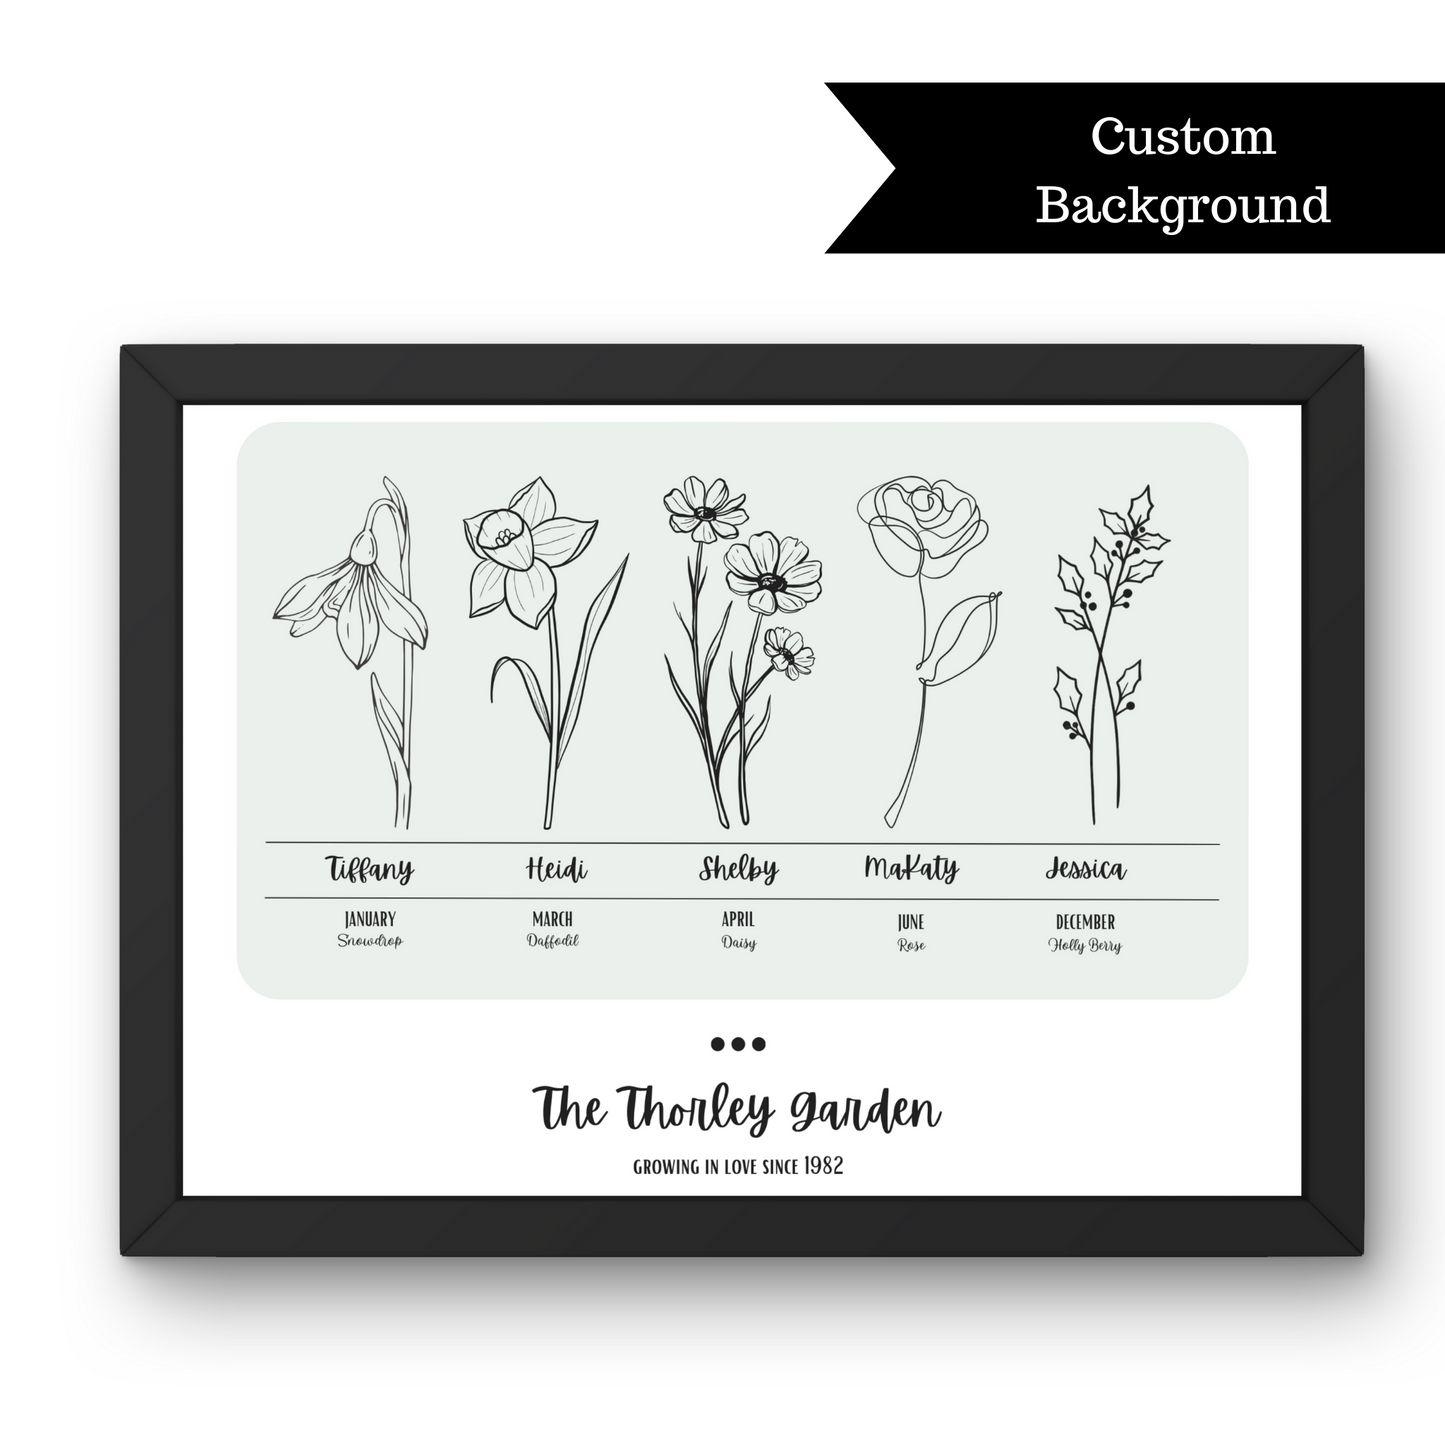 Custom Birth Flower Art Print | Family Garden